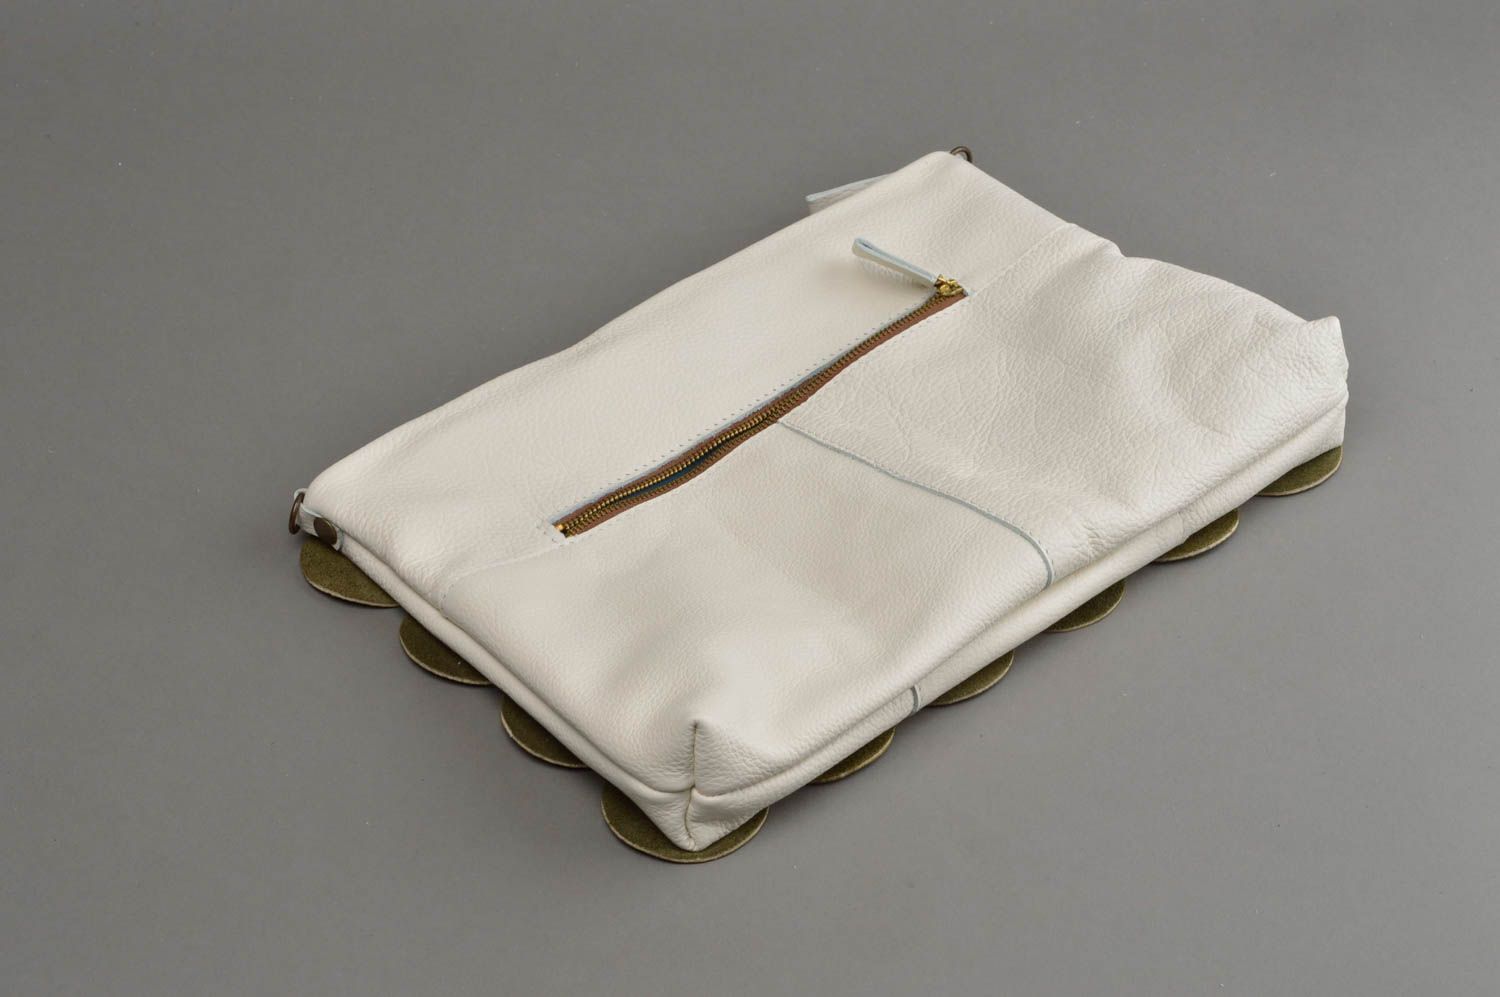 Leather bags for women designer purses women handbags gift ideas for girl photo 3